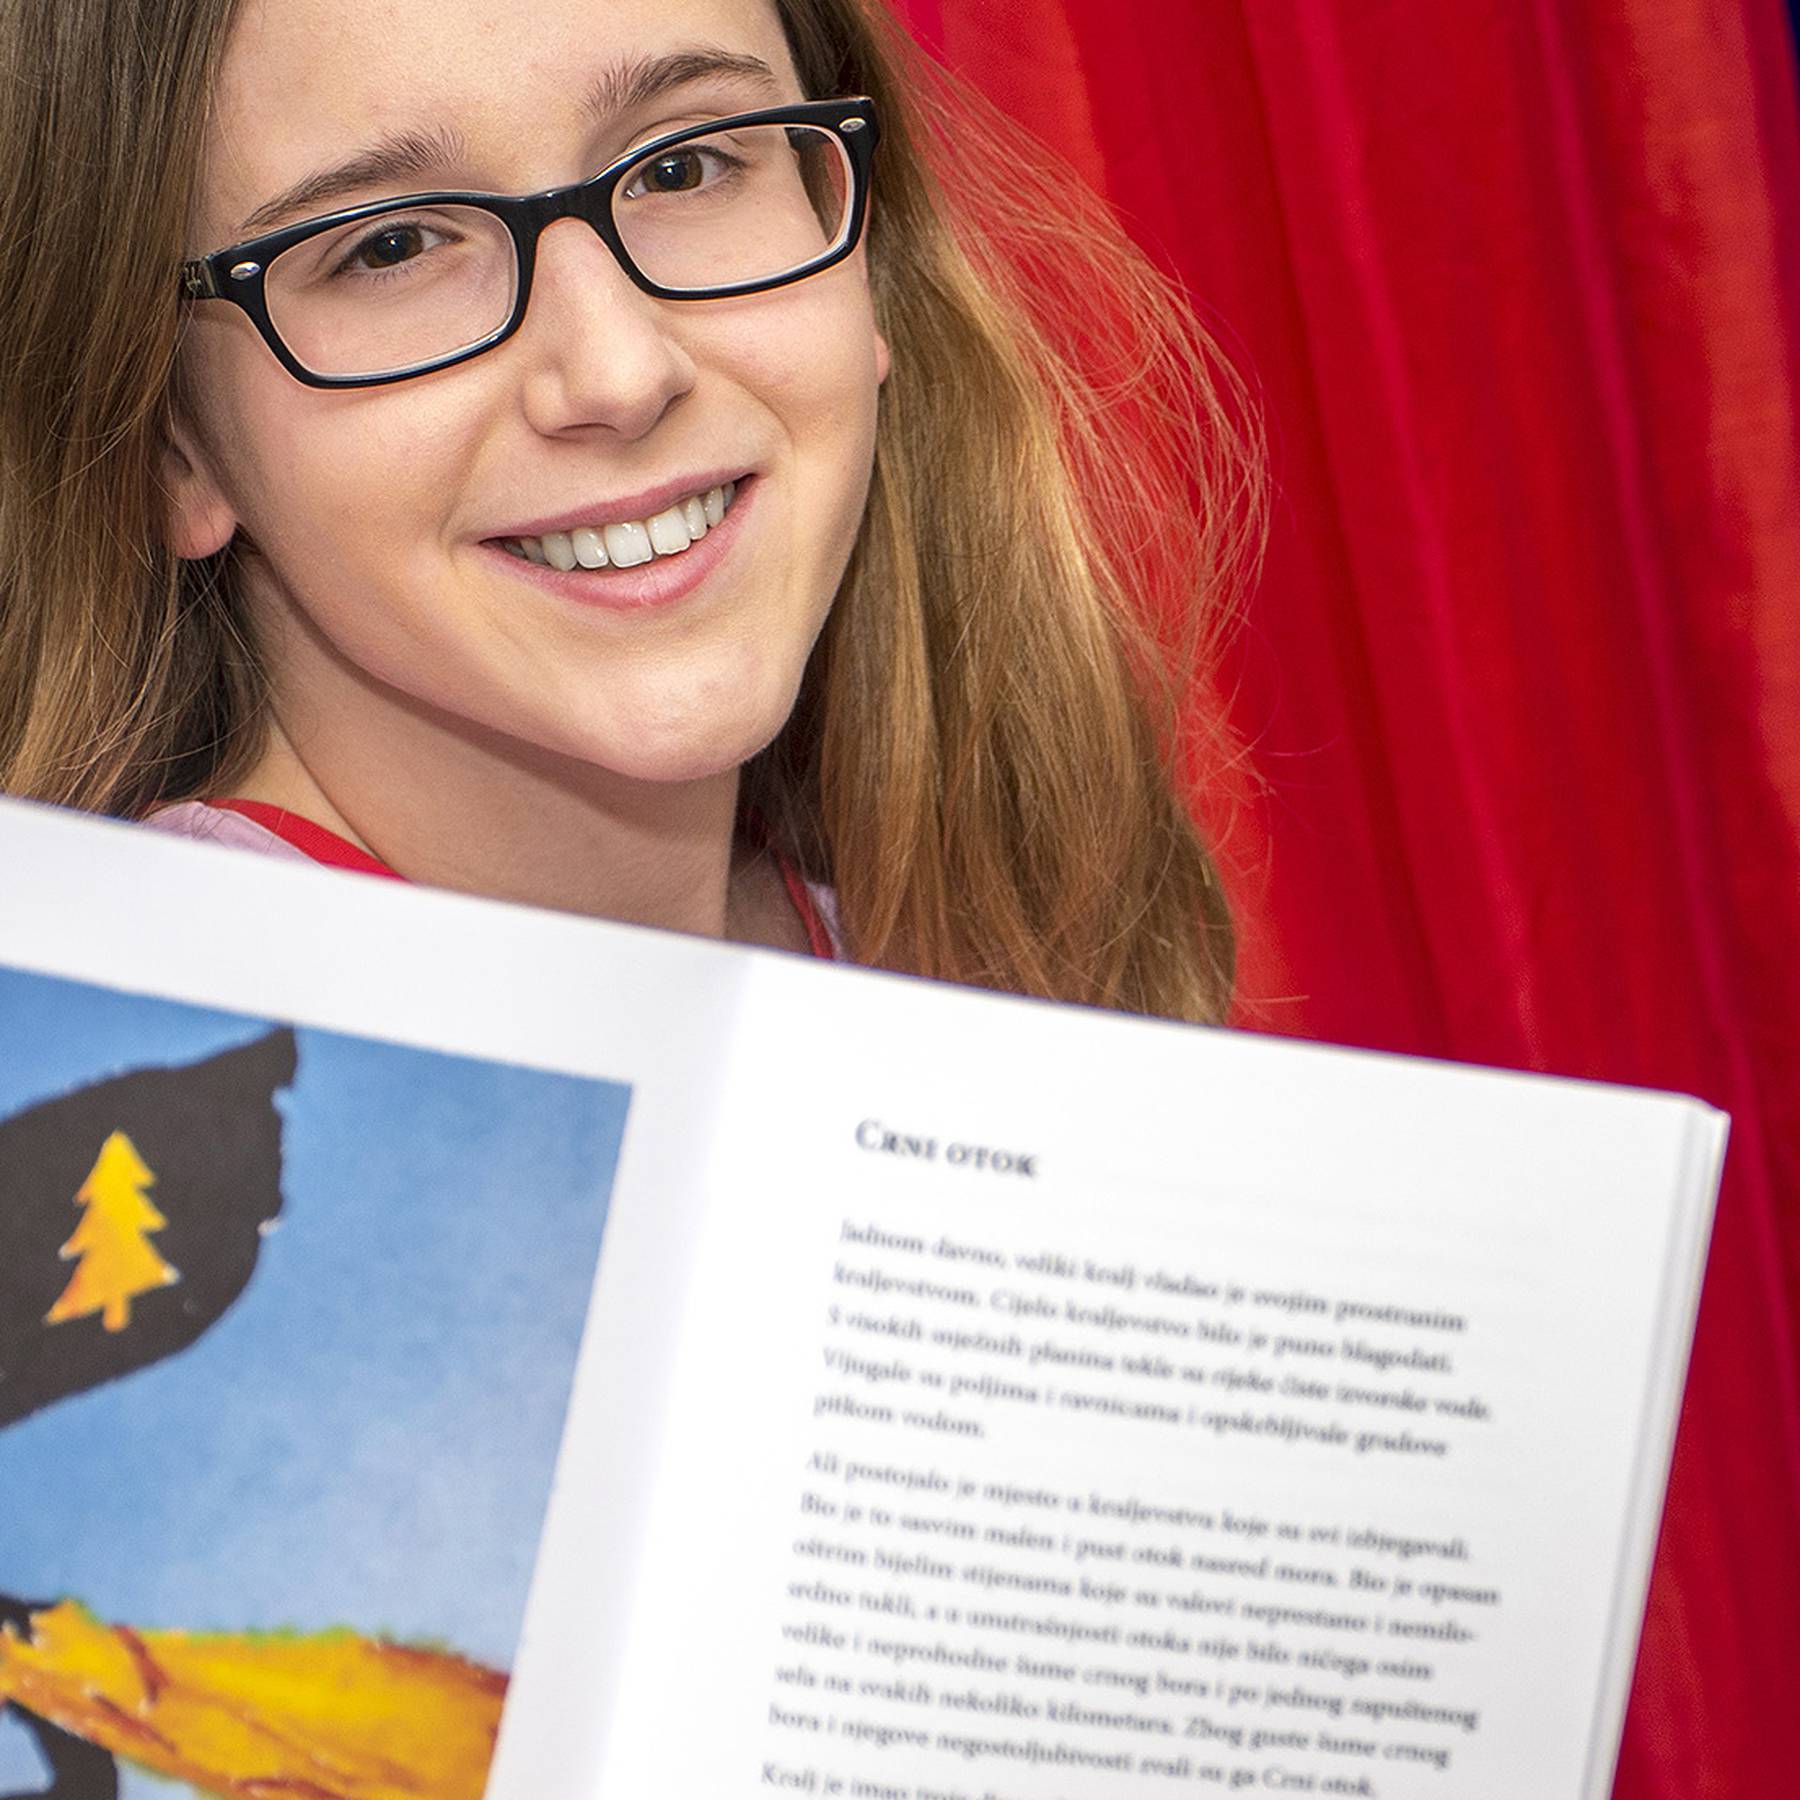 Gimnazijalka Ana (17) objavila zbirku priča o ljubavi i snazi